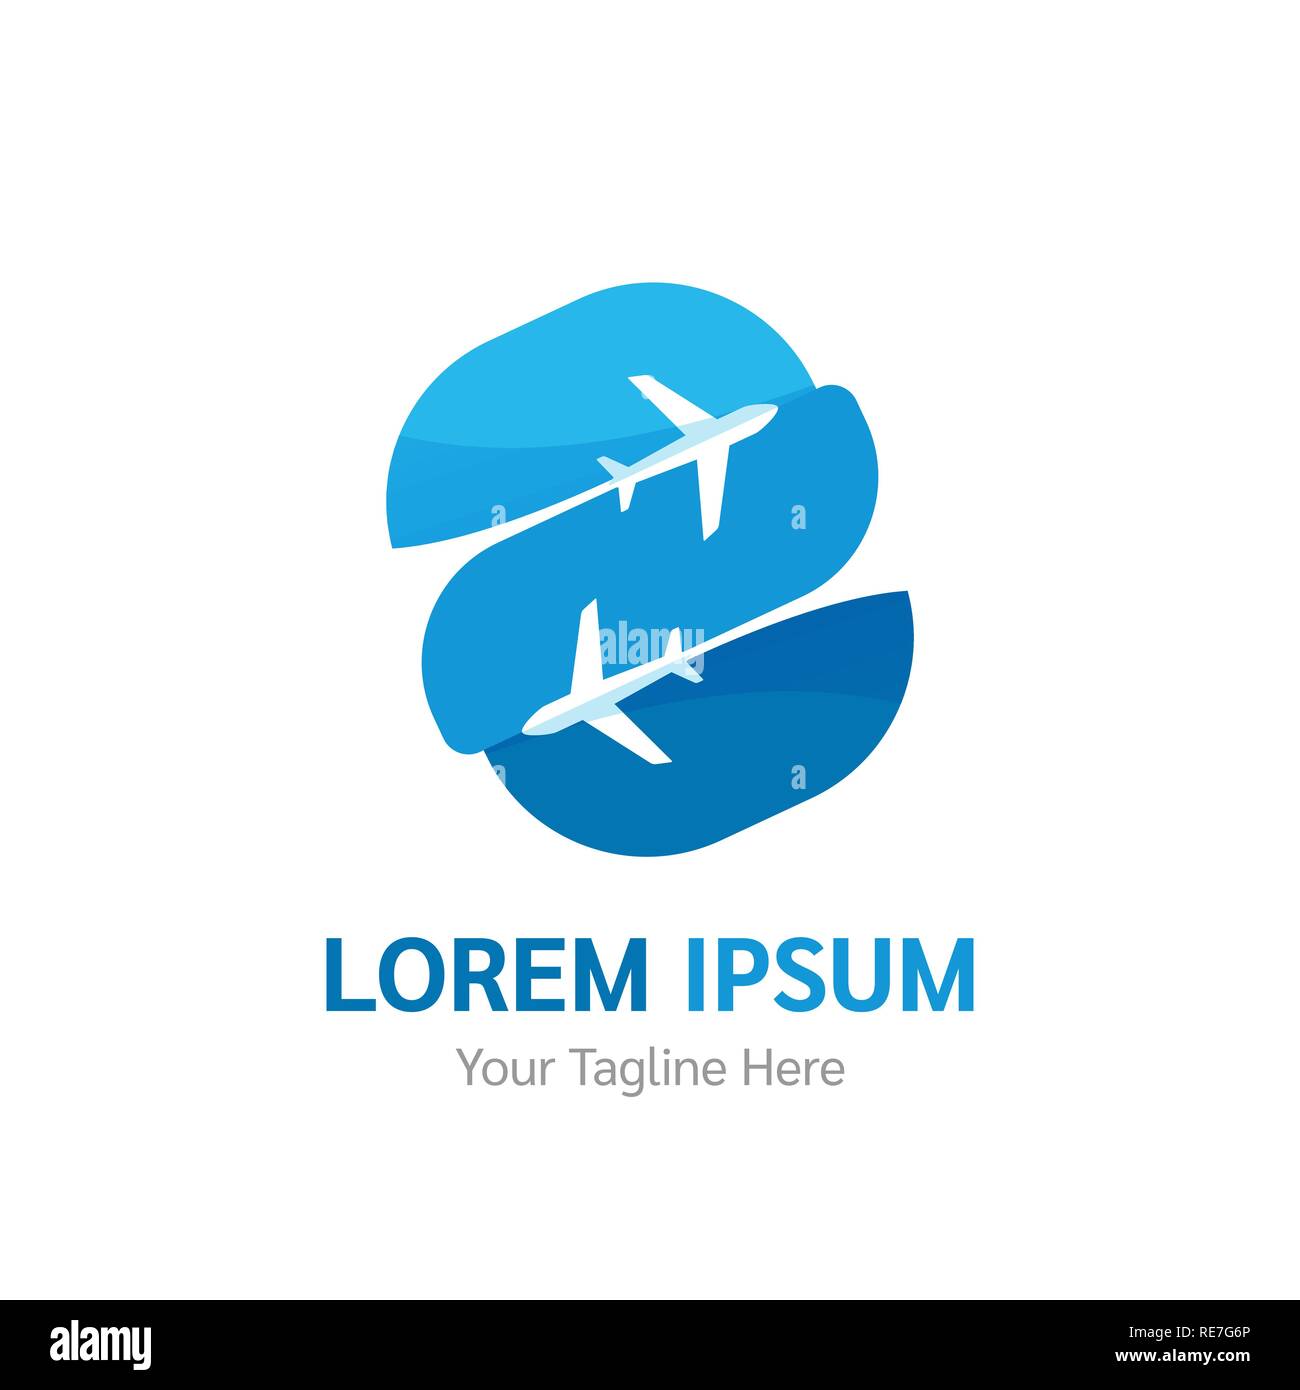 Vettore logotipo della compagnia aerea. Agenzia di viaggi e turismo app, volo logo. Air Company logo design template vettoriale. Illustrazione Vettoriale